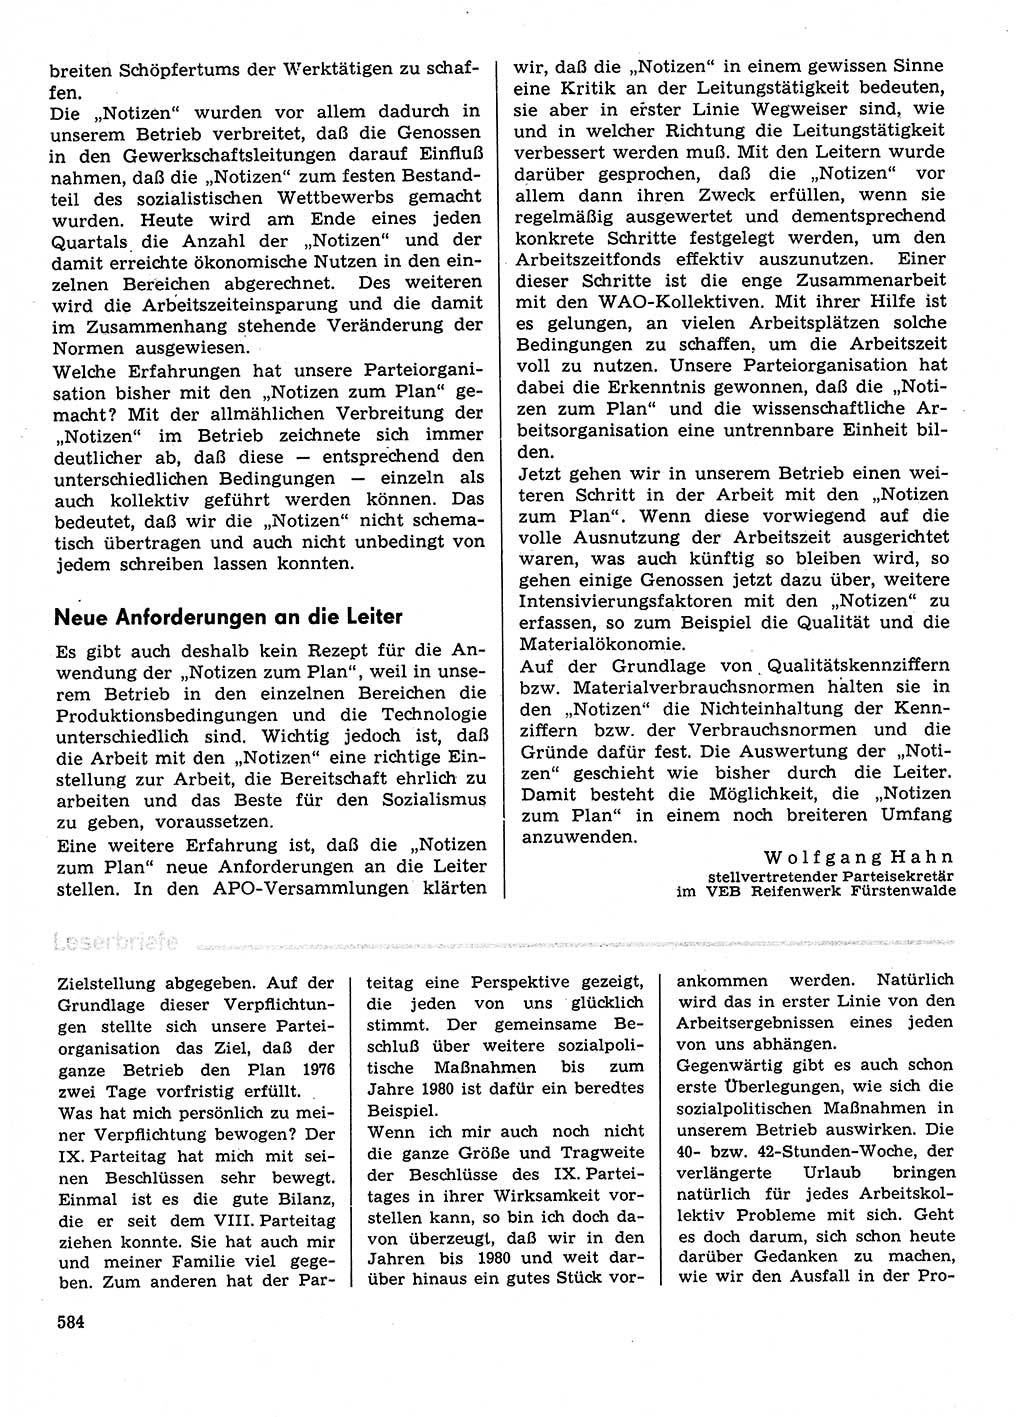 Neuer Weg (NW), Organ des Zentralkomitees (ZK) der SED (Sozialistische Einheitspartei Deutschlands) für Fragen des Parteilebens, 31. Jahrgang [Deutsche Demokratische Republik (DDR)] 1976, Seite 584 (NW ZK SED DDR 1976, S. 584)